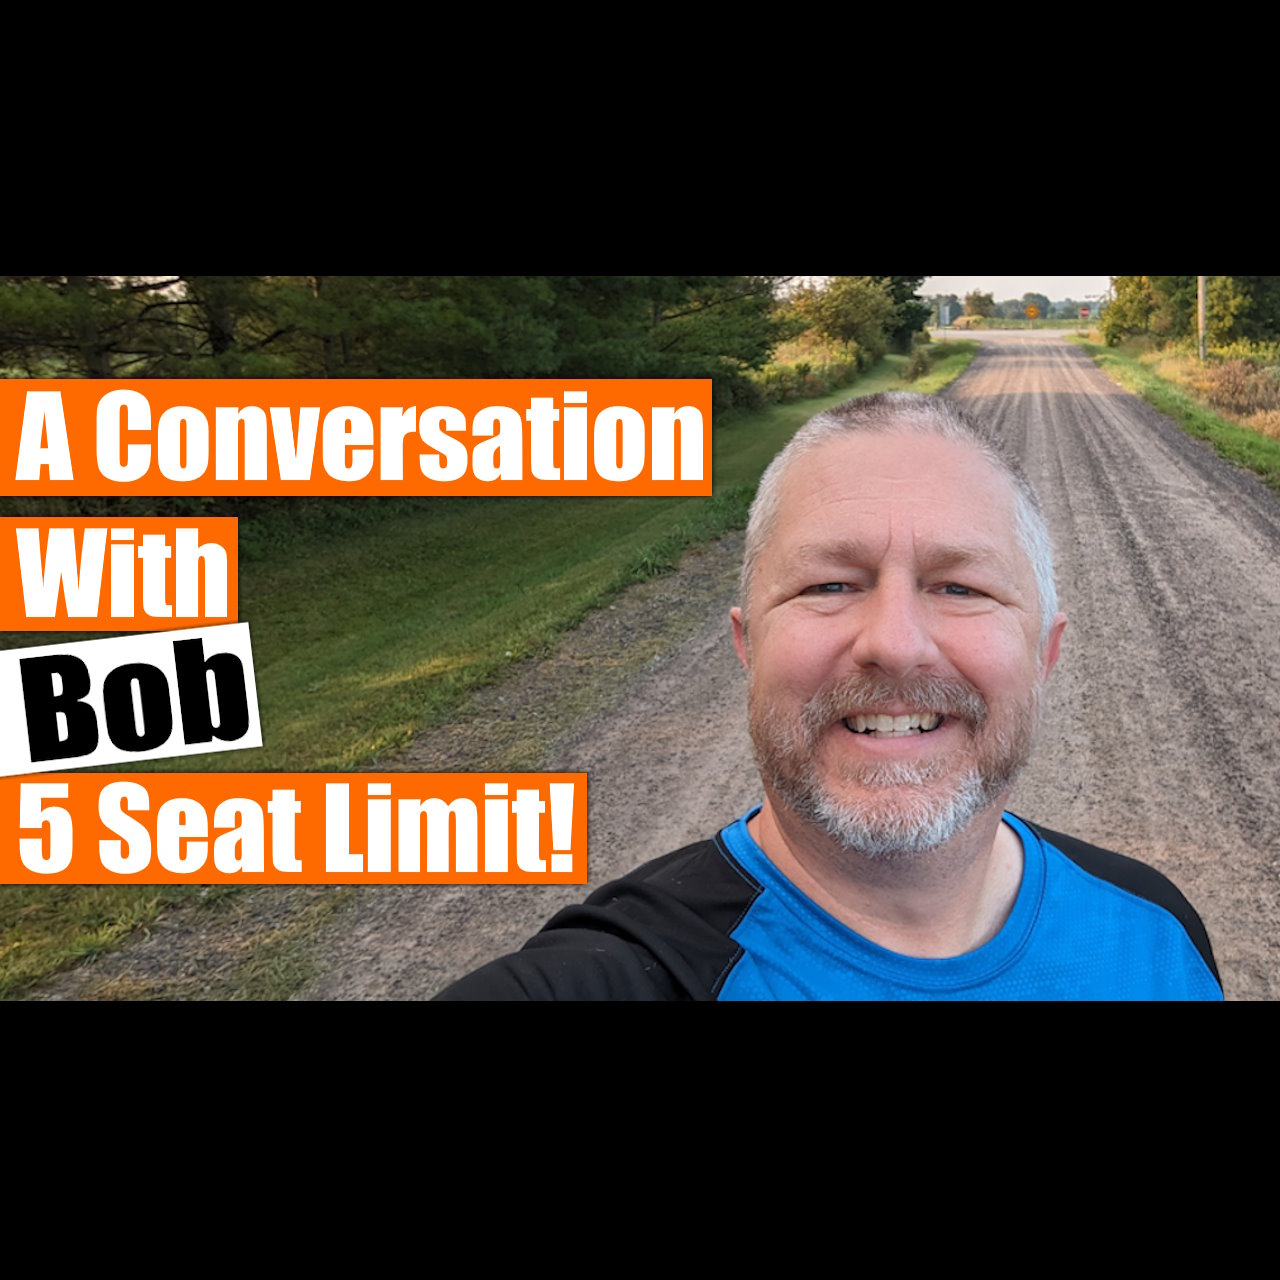 Uma conversa com Bob - sábado, 9 de setembro - 7h30, horário padrão do leste dos EUA - limite de 5 pessoas